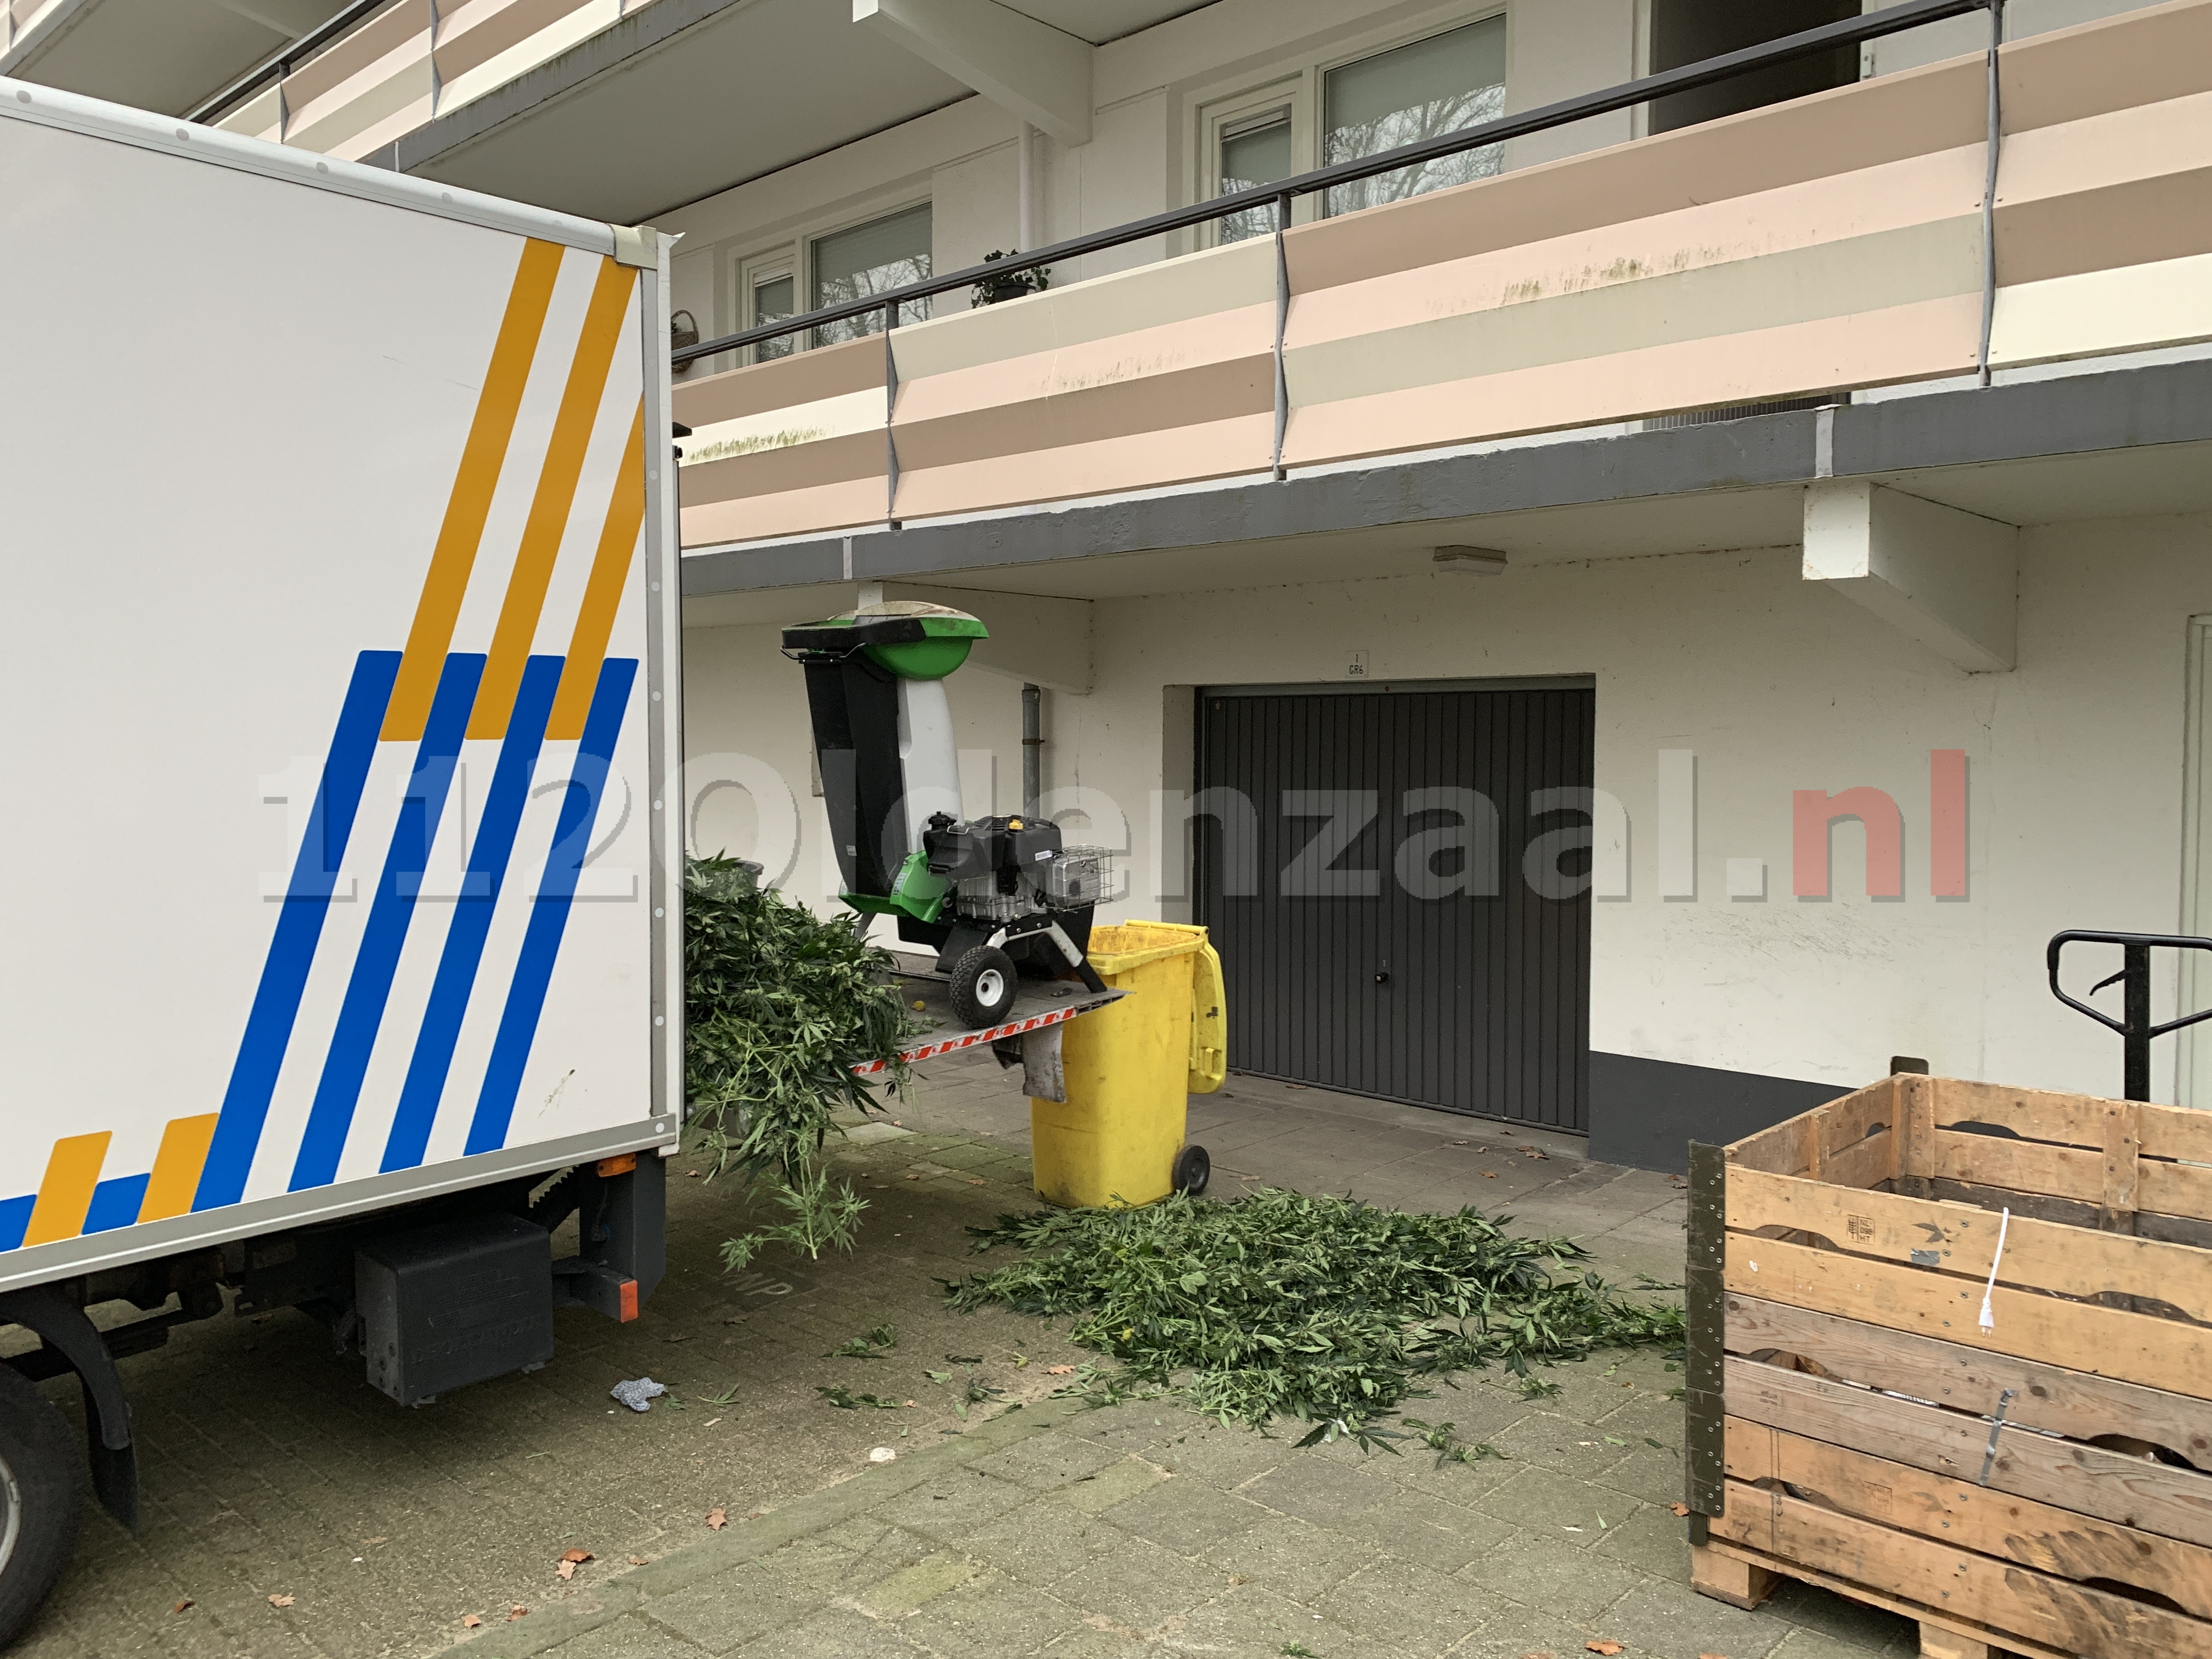 VIDEO: Man aangehouden na hennepkwekerij in flat Oldenzaal